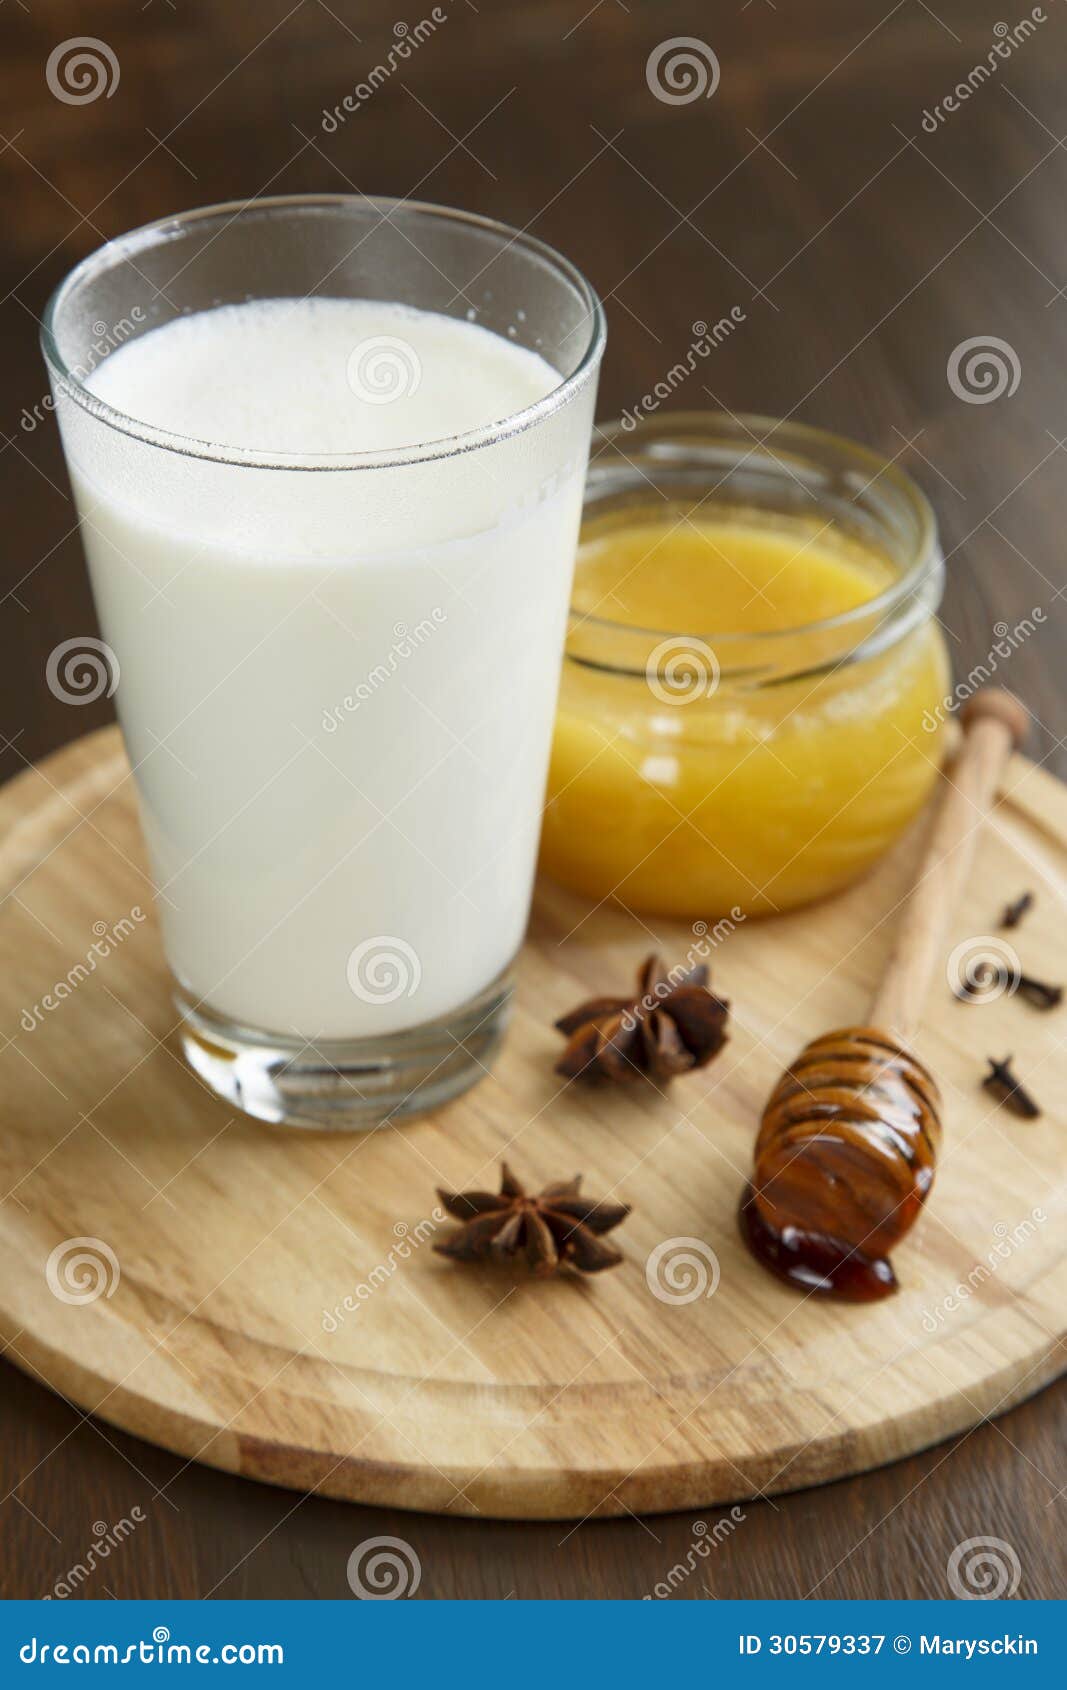 美好的构成用牛奶和蜂蜜 库存图片. 图片 包括有 制动手, 自然, 美食, 新鲜, 构成, 奶油, 治病 - 114511447